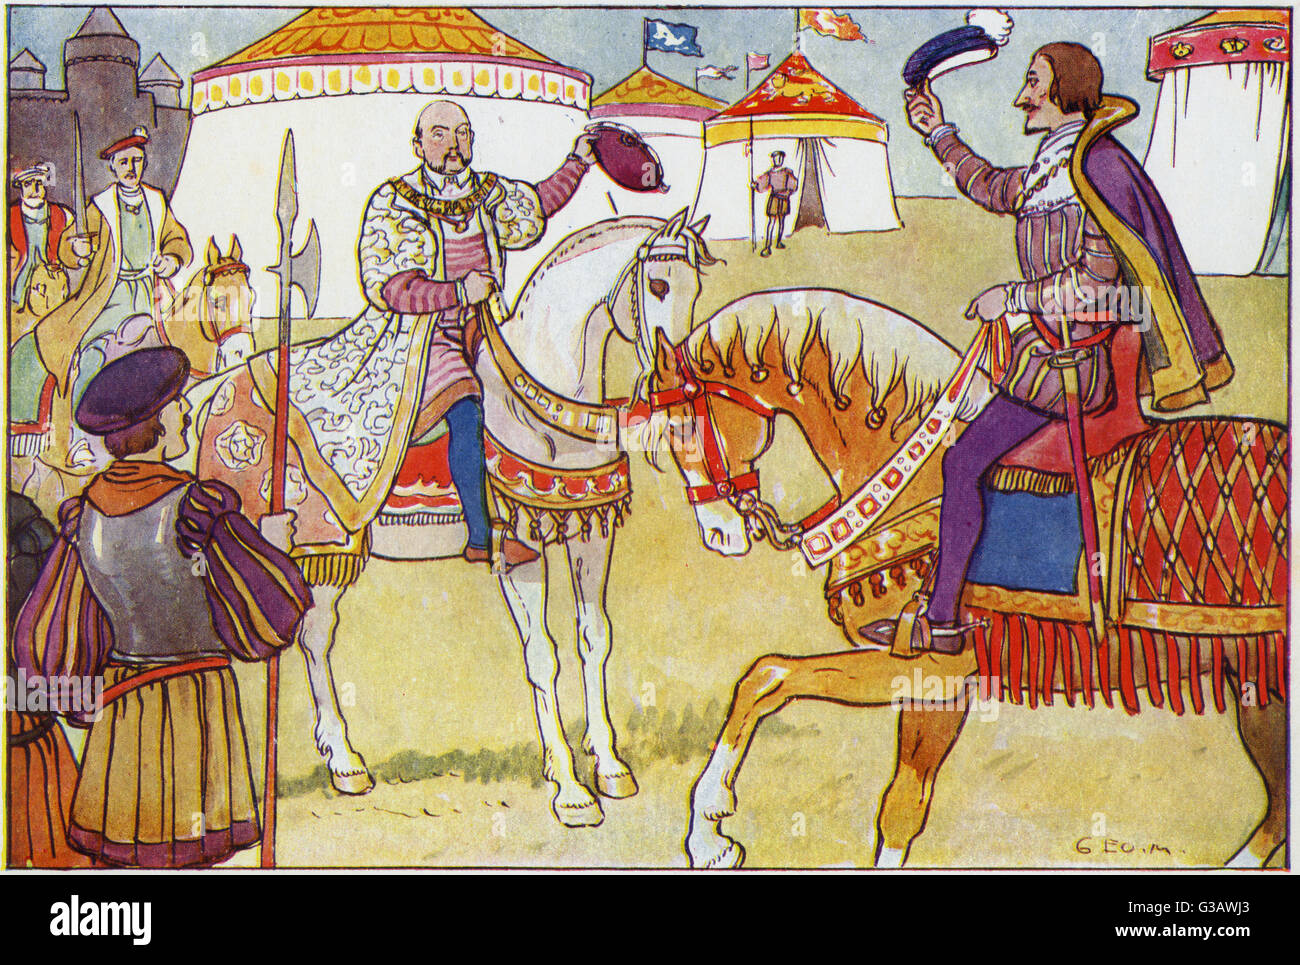 Die Besprechung von König Henry VIII von England und König Francis I von Francis auf dem Gebiet der Cloth of Gold oder Camp du Drap d ' or, die Bezeichnung für einen Platz in Balinghem zwischen Guines und Ardres, in Frankreich, in der Nähe von Calais vom 7. Juni bis 24. Juni 1520. Stockfoto